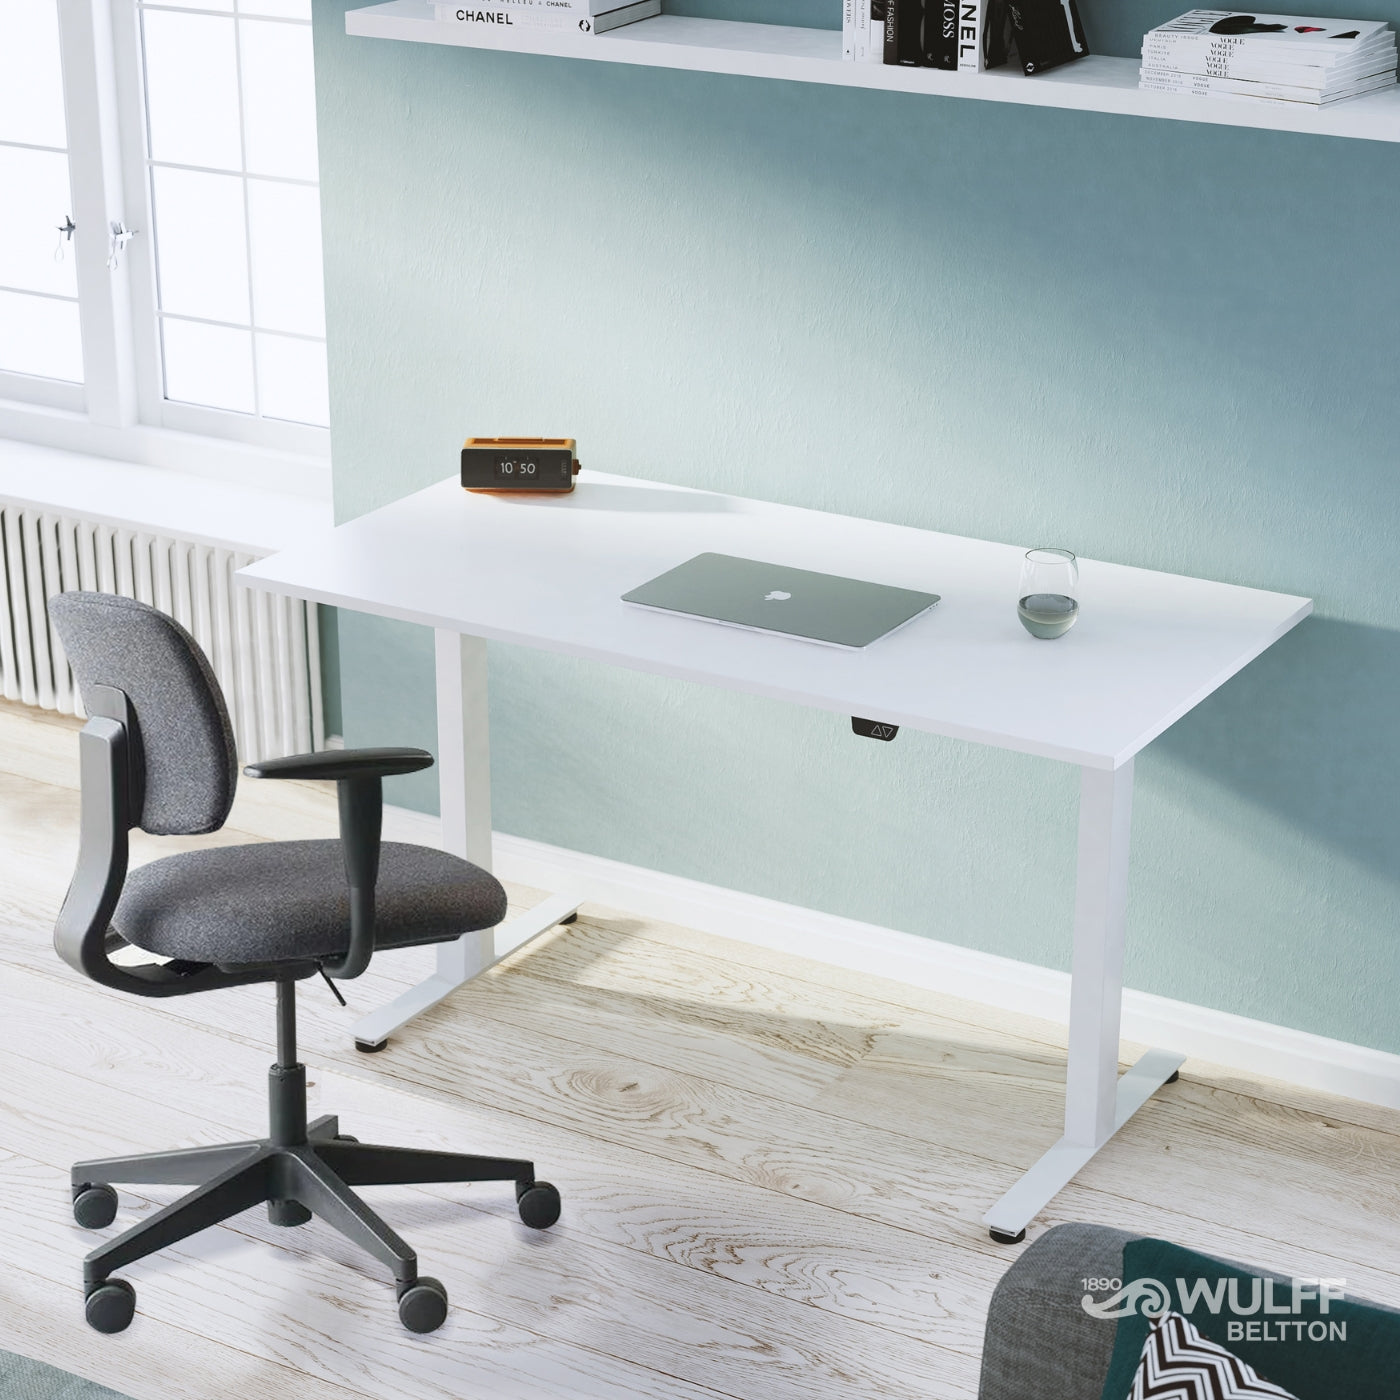 Höj och sänkbara skrivbord för en ergonomisk arbetsplats